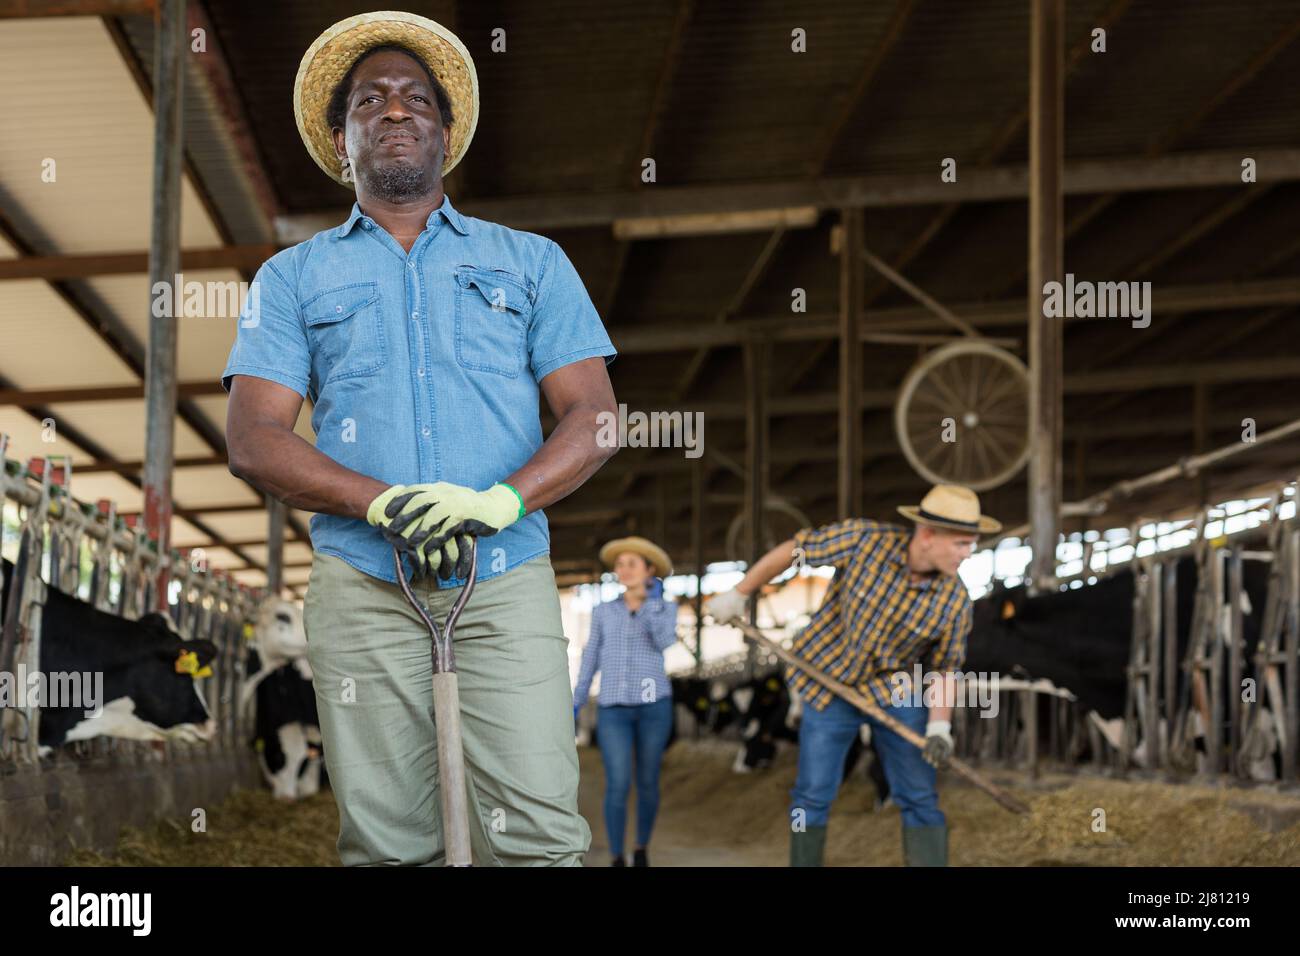 Porträt eines afroamerikanischen Bauern, der in einem Kuhstall steht Stockfoto